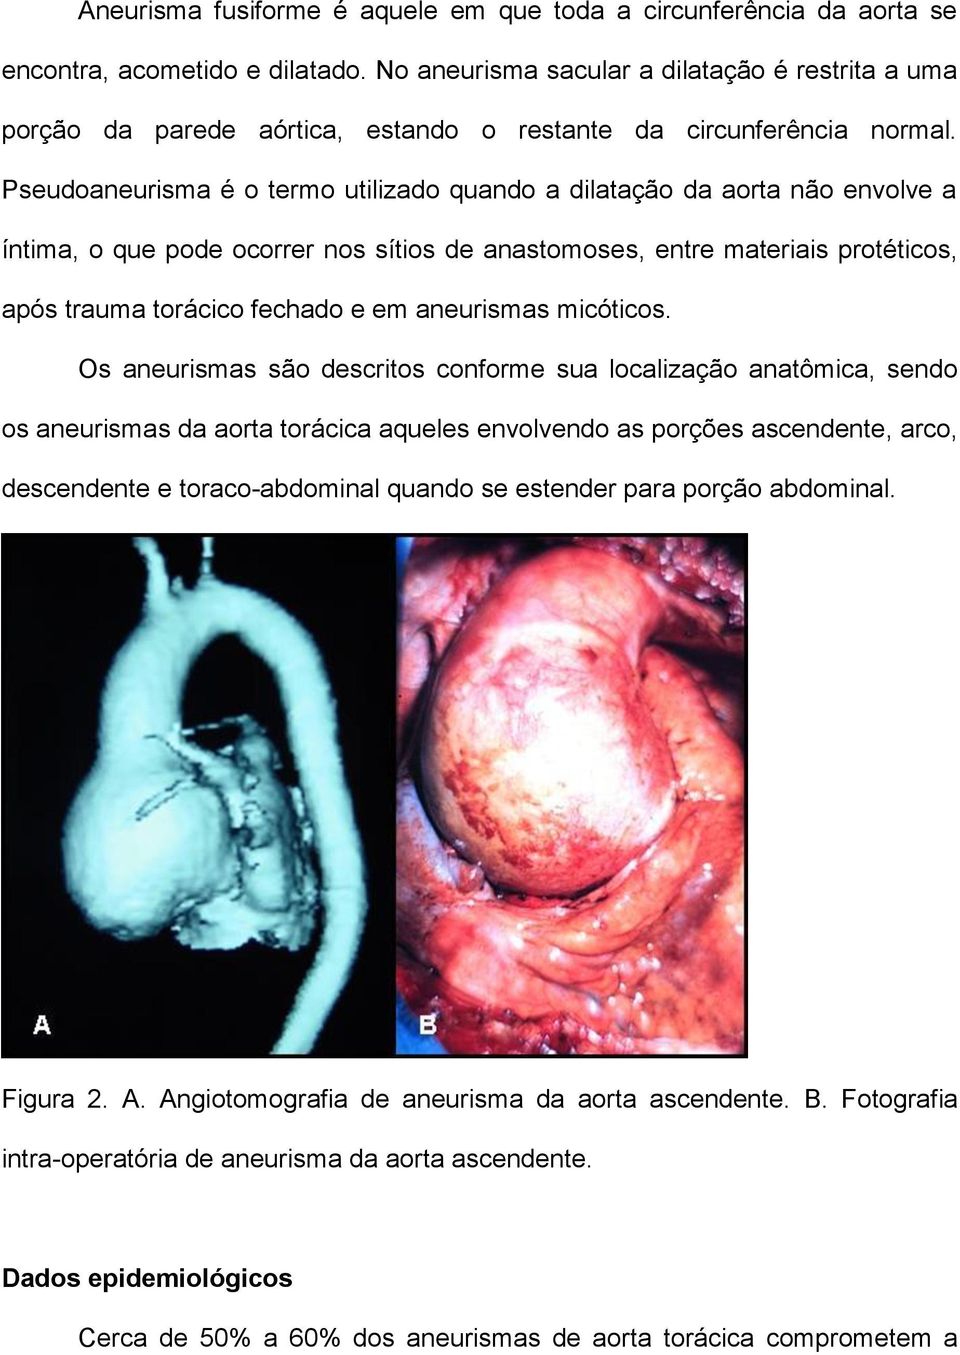 Pseudoaneurisma é o termo utilizado quando a dilatação da aorta não envolve a íntima, o que pode ocorrer nos sítios de anastomoses, entre materiais protéticos, após trauma torácico fechado e em